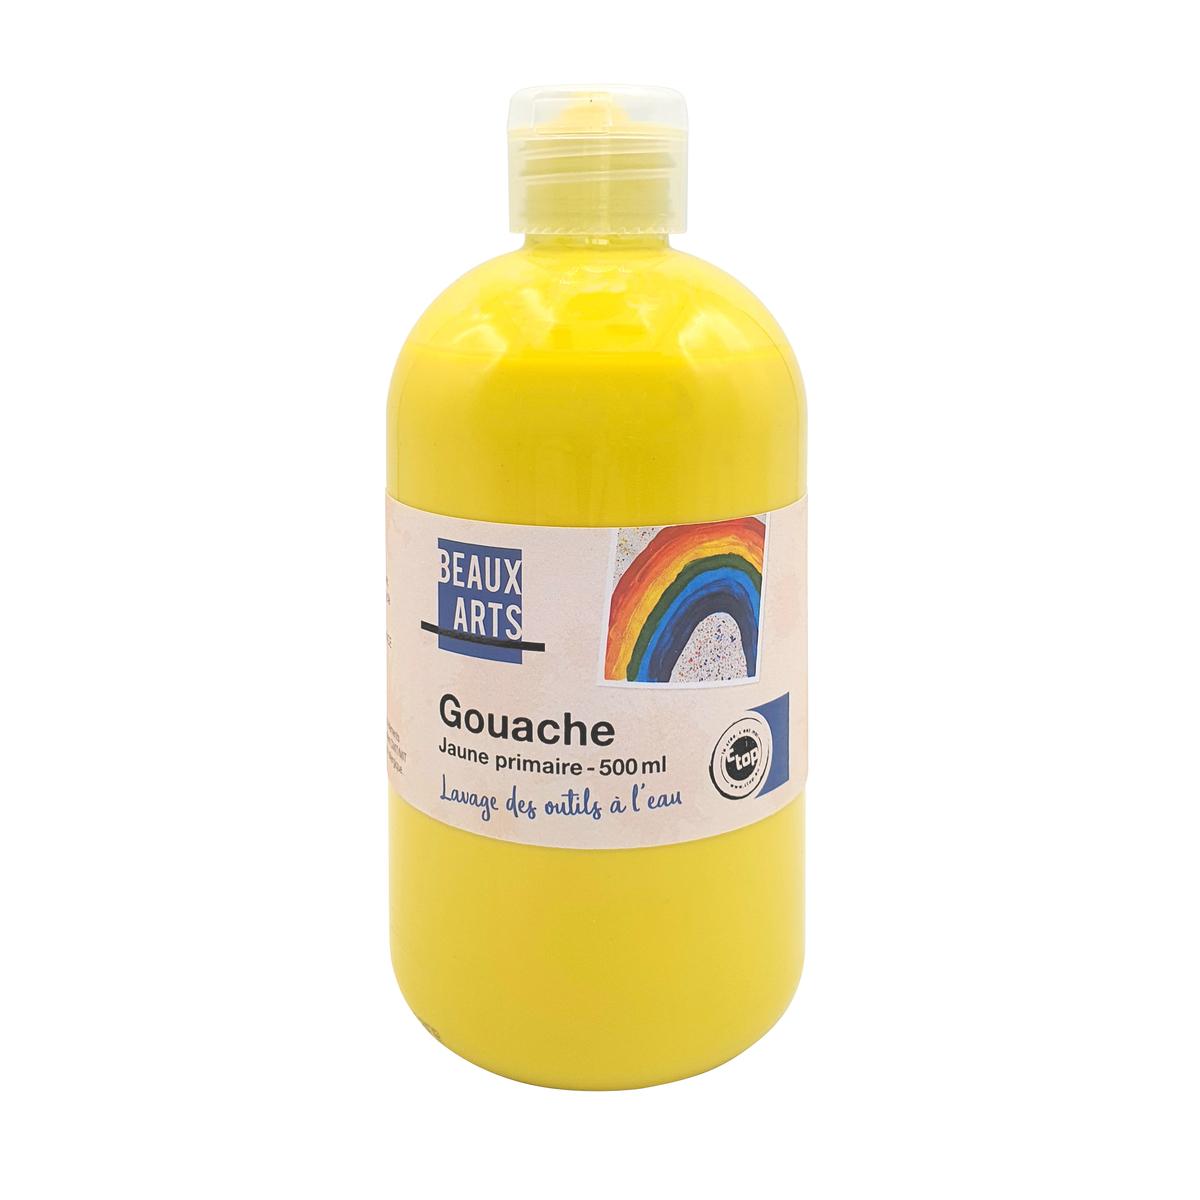 Gouache jaune primaire 500 ml